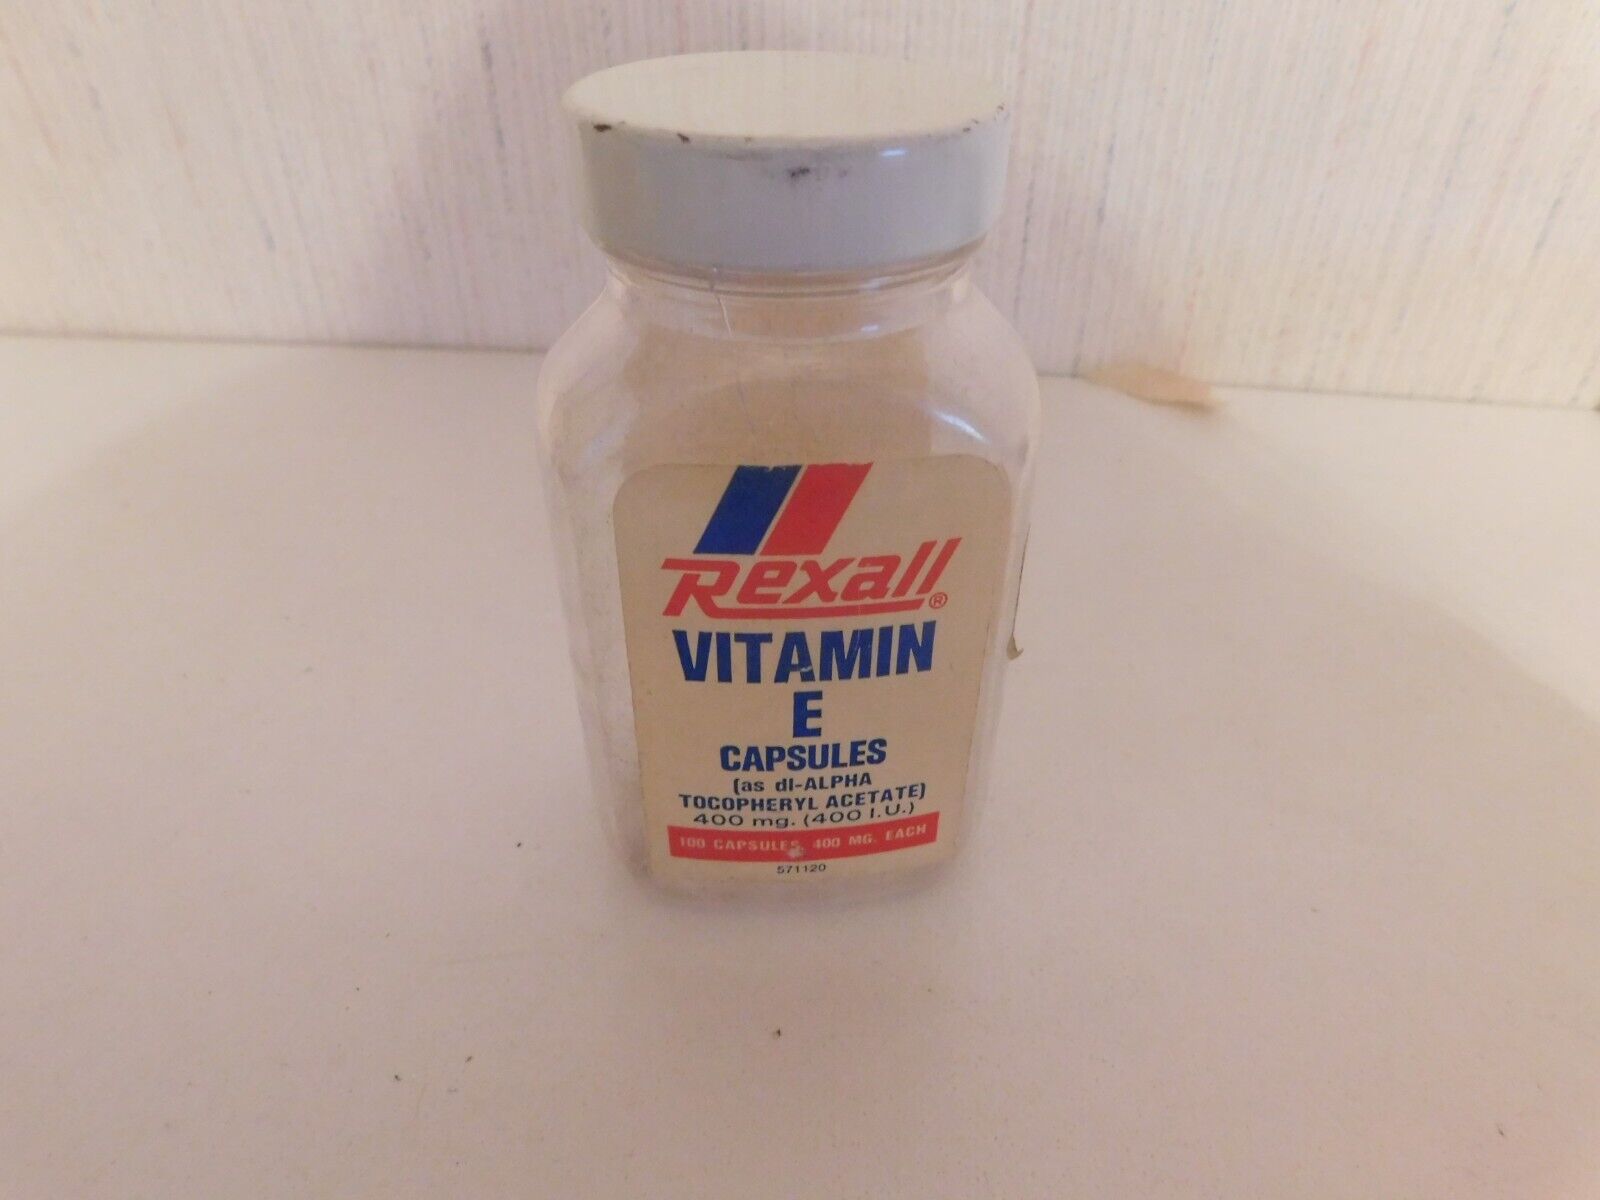 Rexall Vitamin E Capsules Empty Bottle